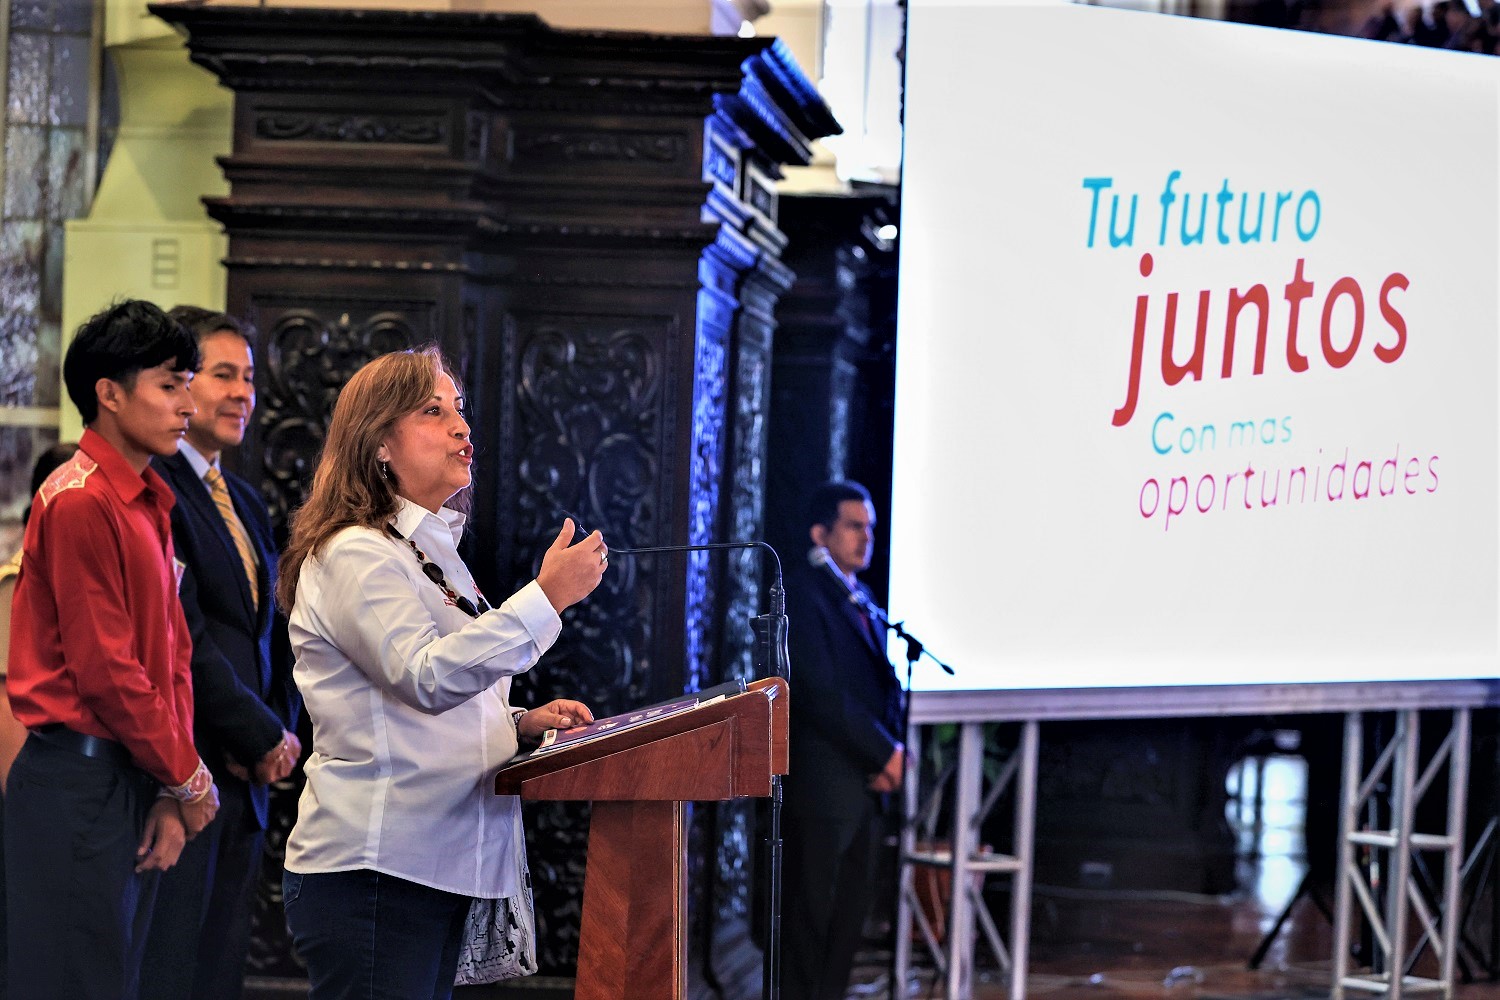 Presidenta Boluarte a 148 jóvenes becarios del programa Juntos, "Sigan adelante, tienen una ruta con luz propia, sigan esa luz y no la apaguen nunca".